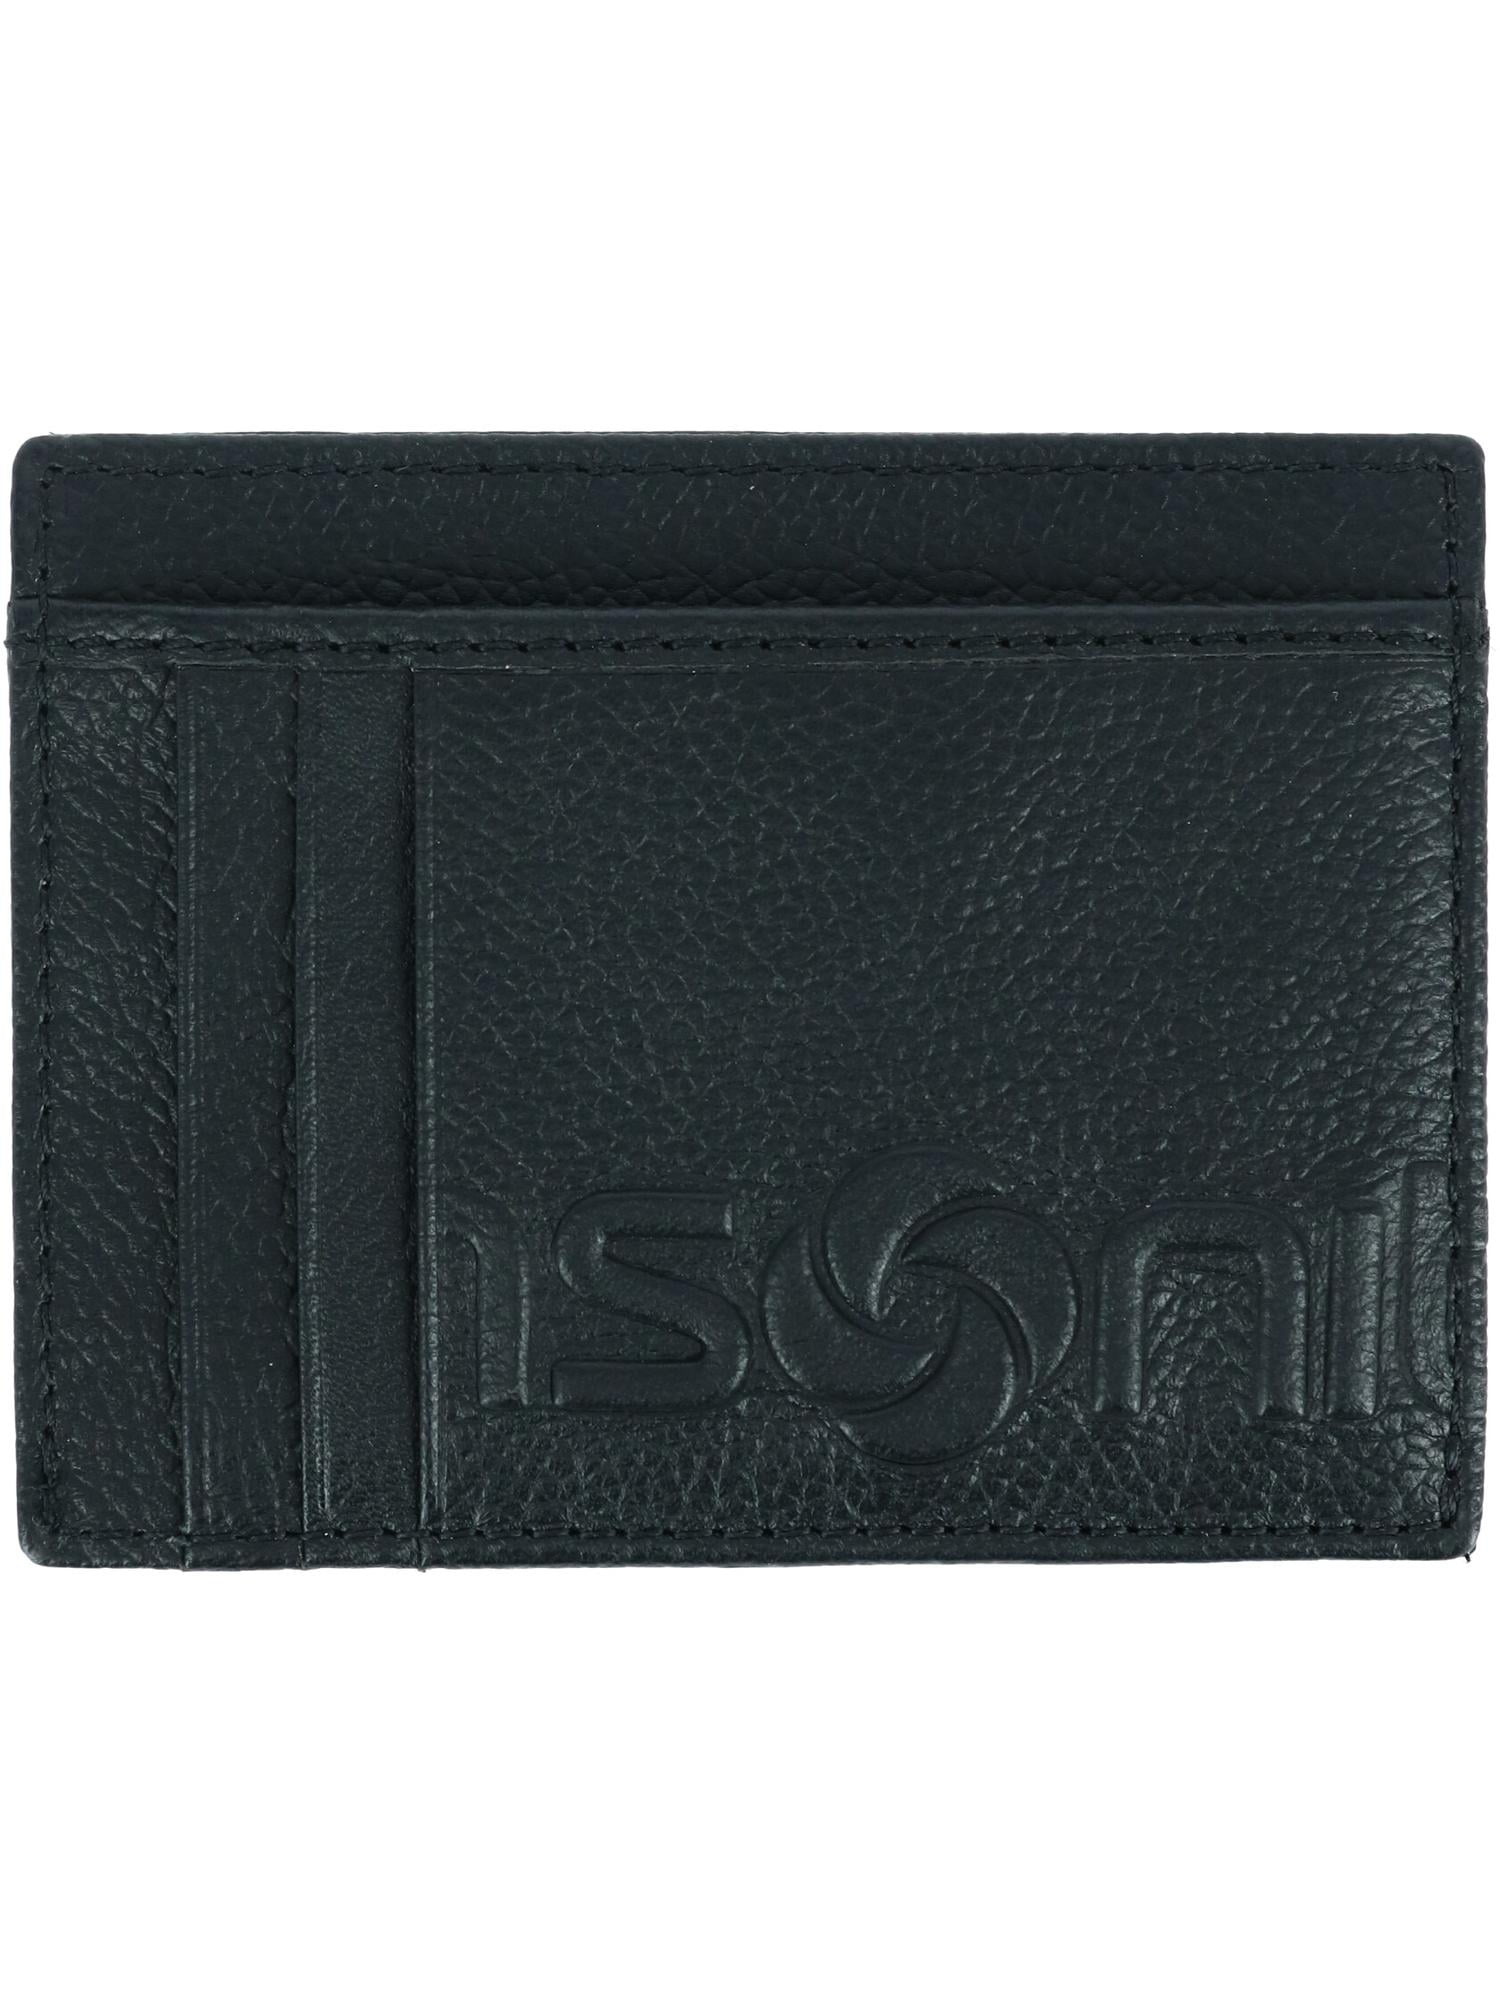 Samsonite Leather RFID Front Pocket Getaway Card Case Wallet (Men's ...